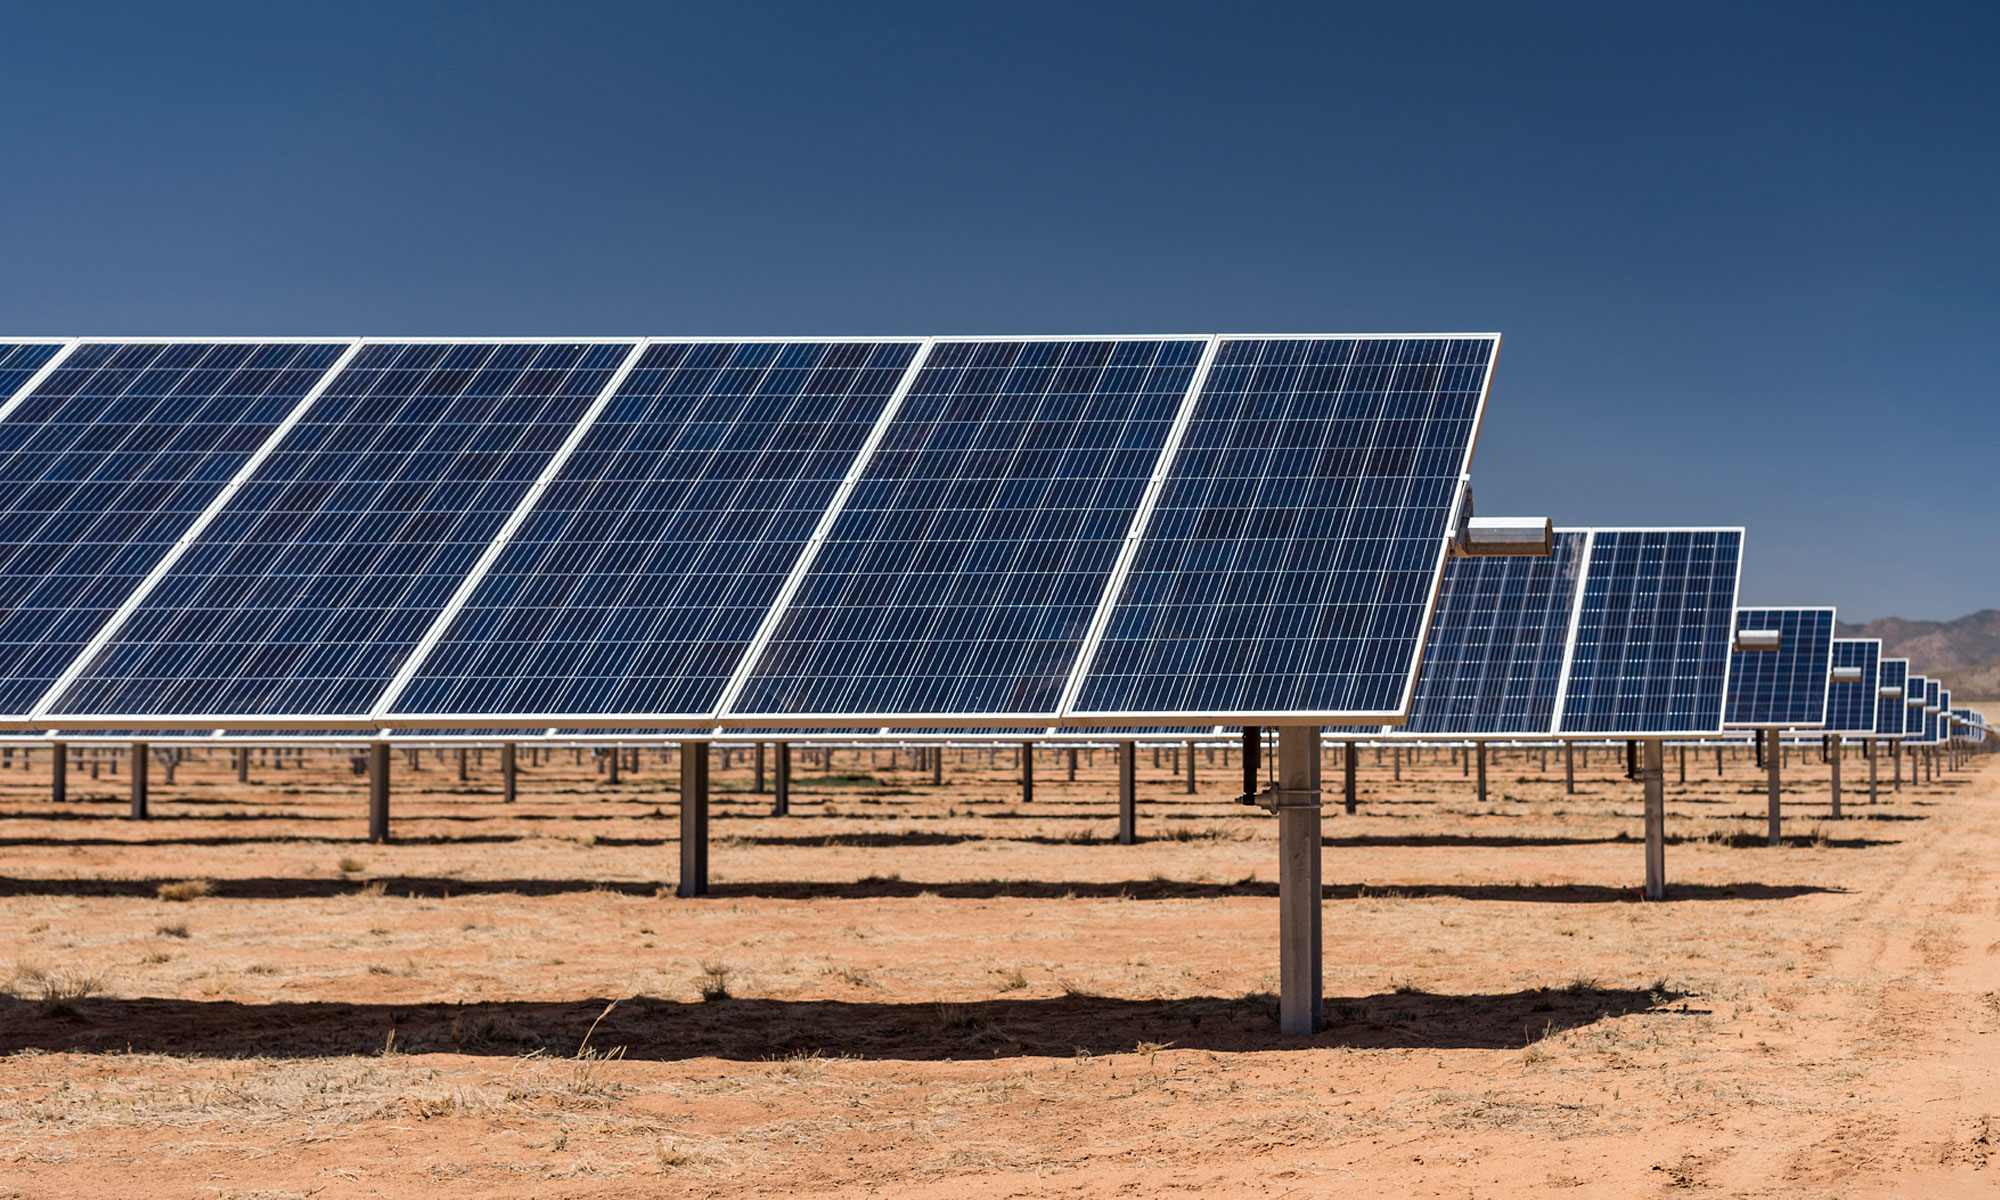 Gray Hawk solar project in Arizona by Swinerton Renewable Energy